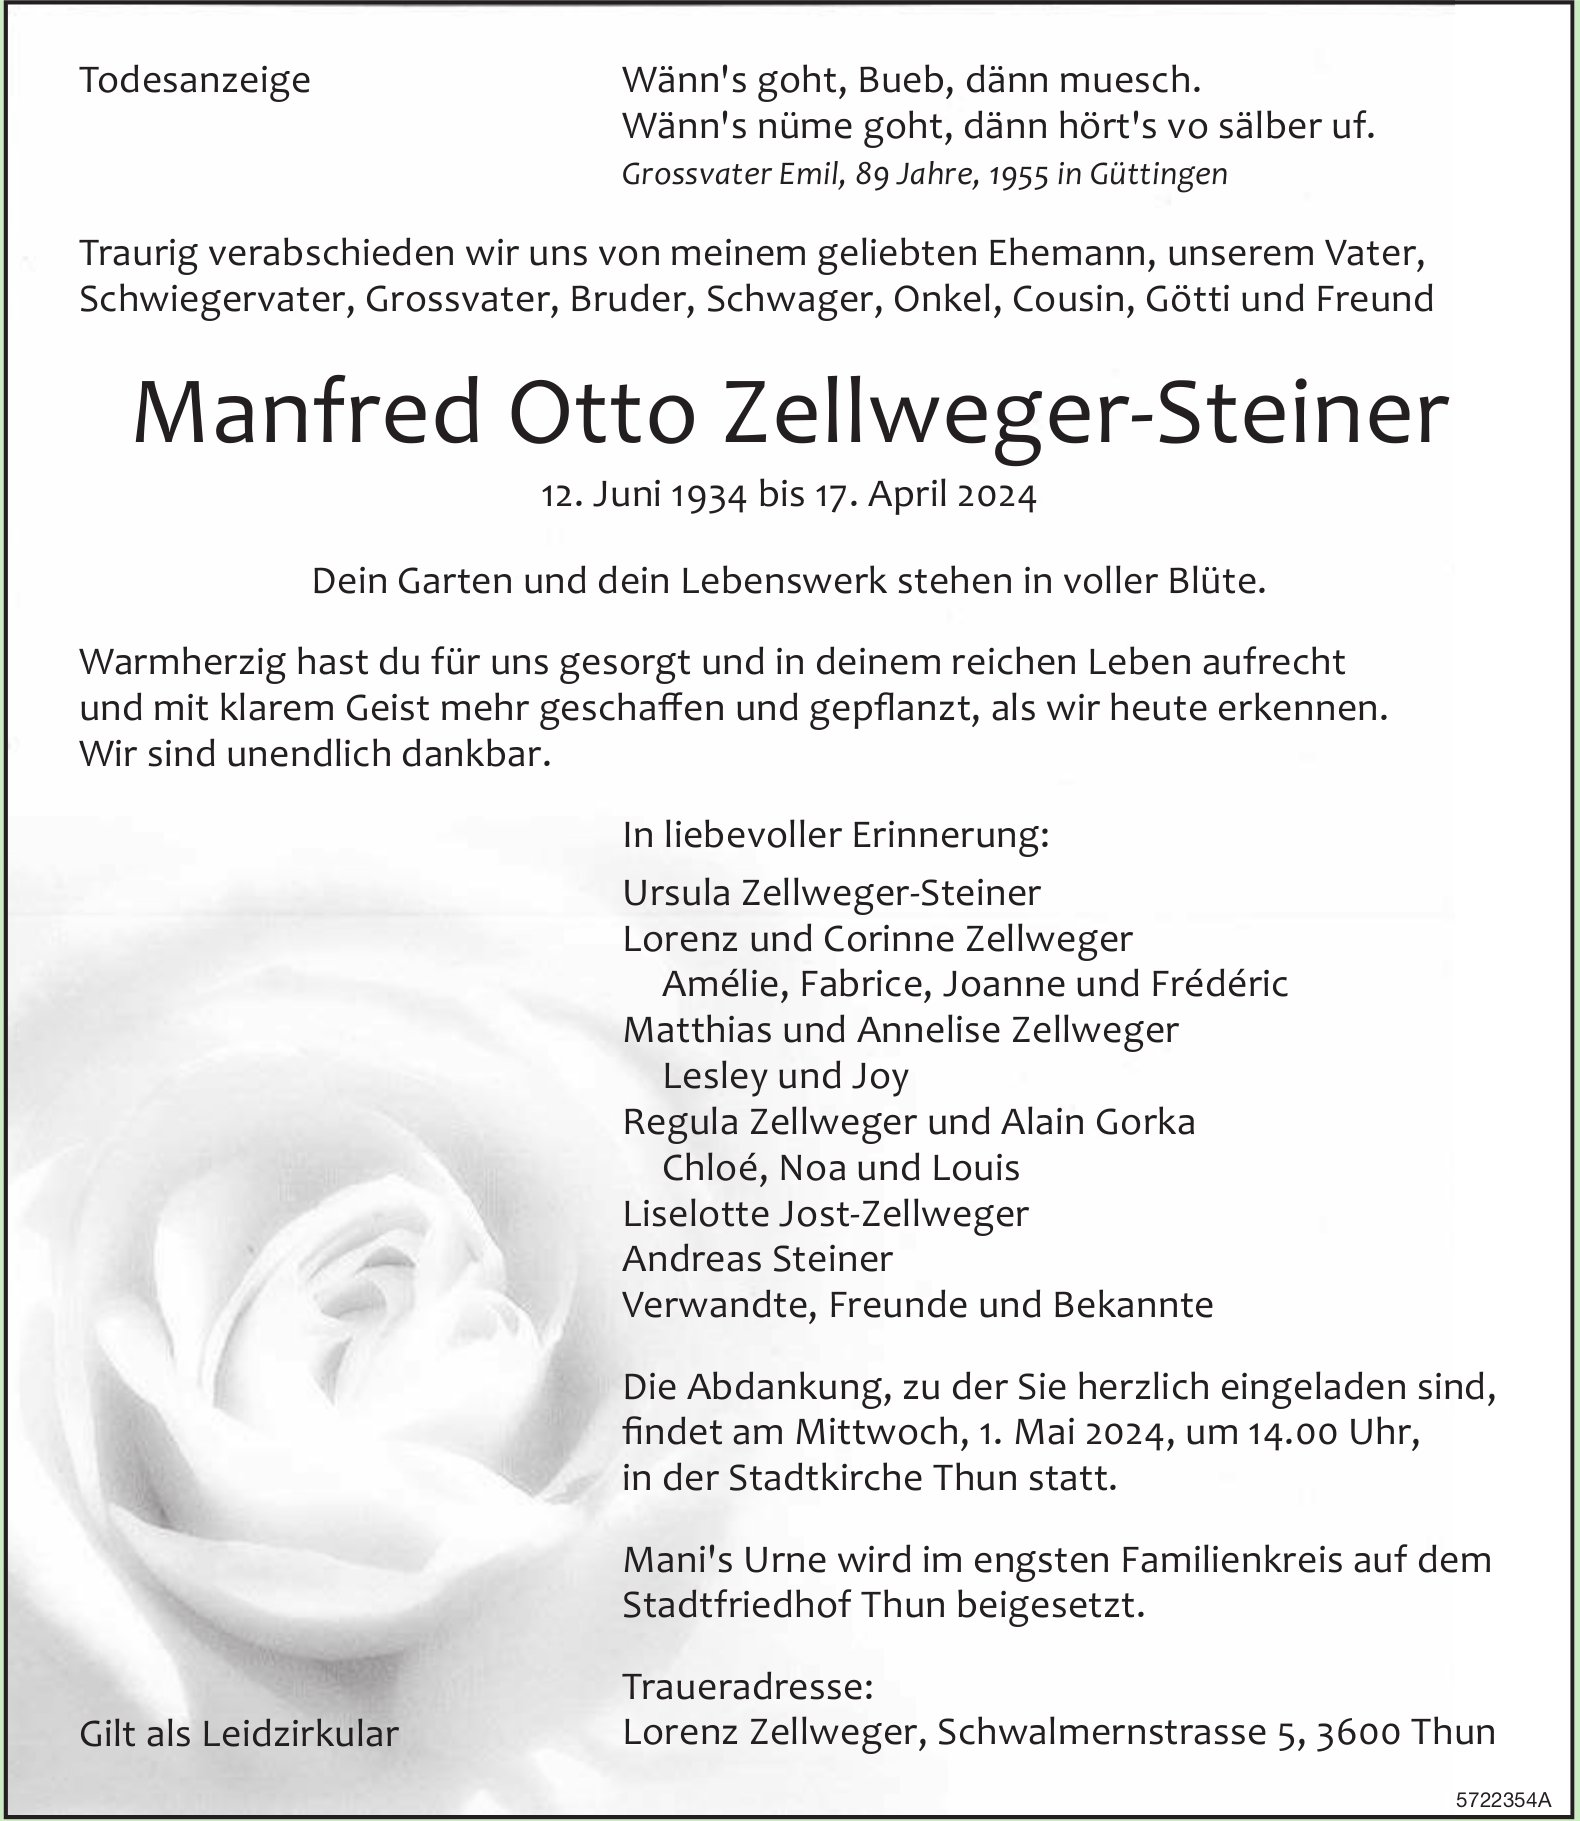 Zellweger-Steiner Manfred Otto, April 2024 / TA